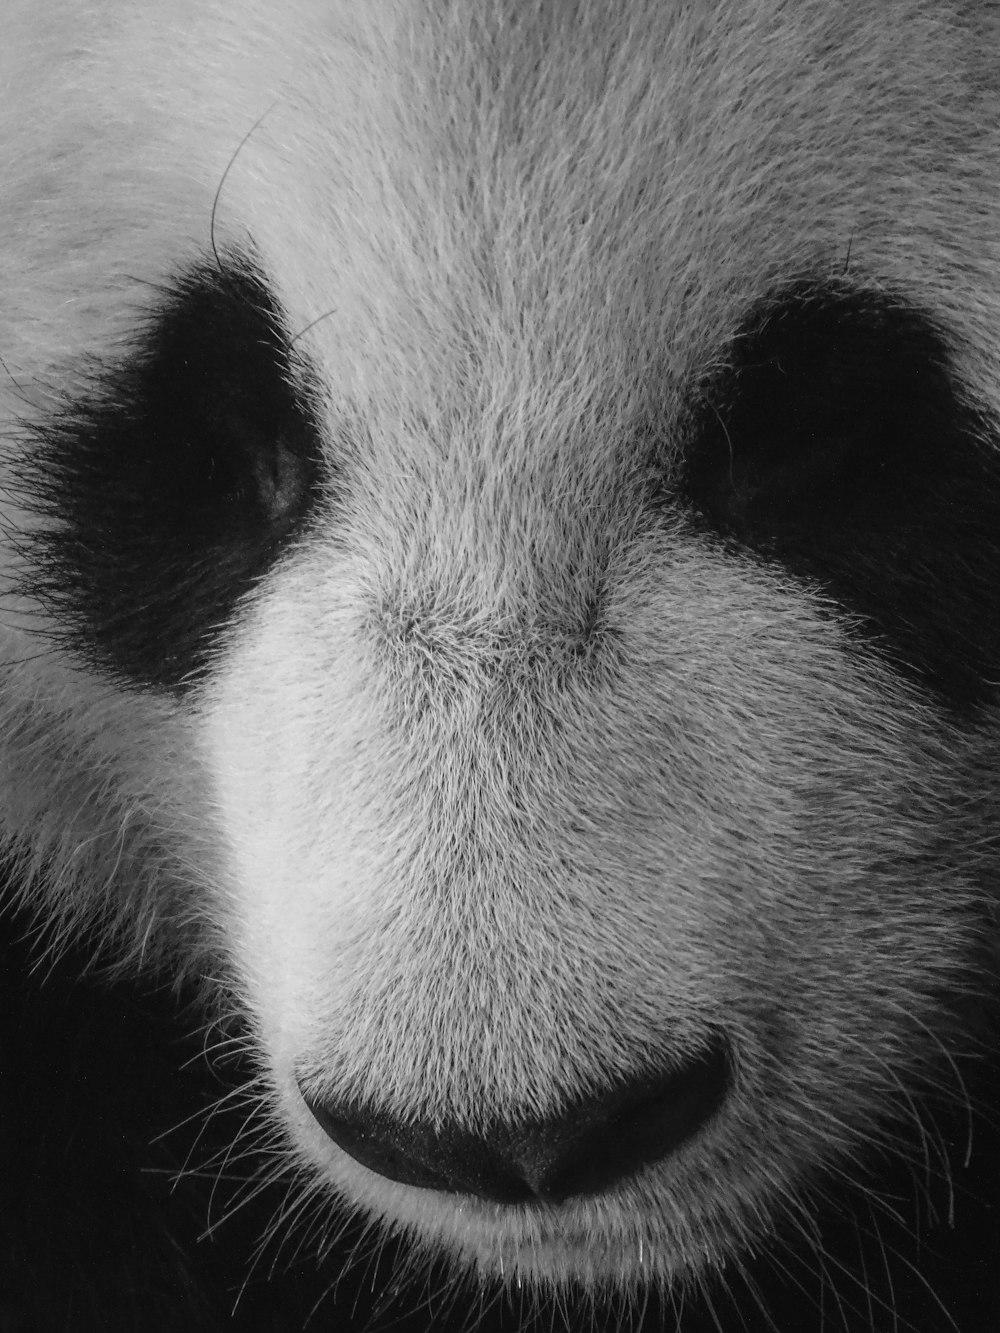 panda bianco e nero in fotografia ravvicinata